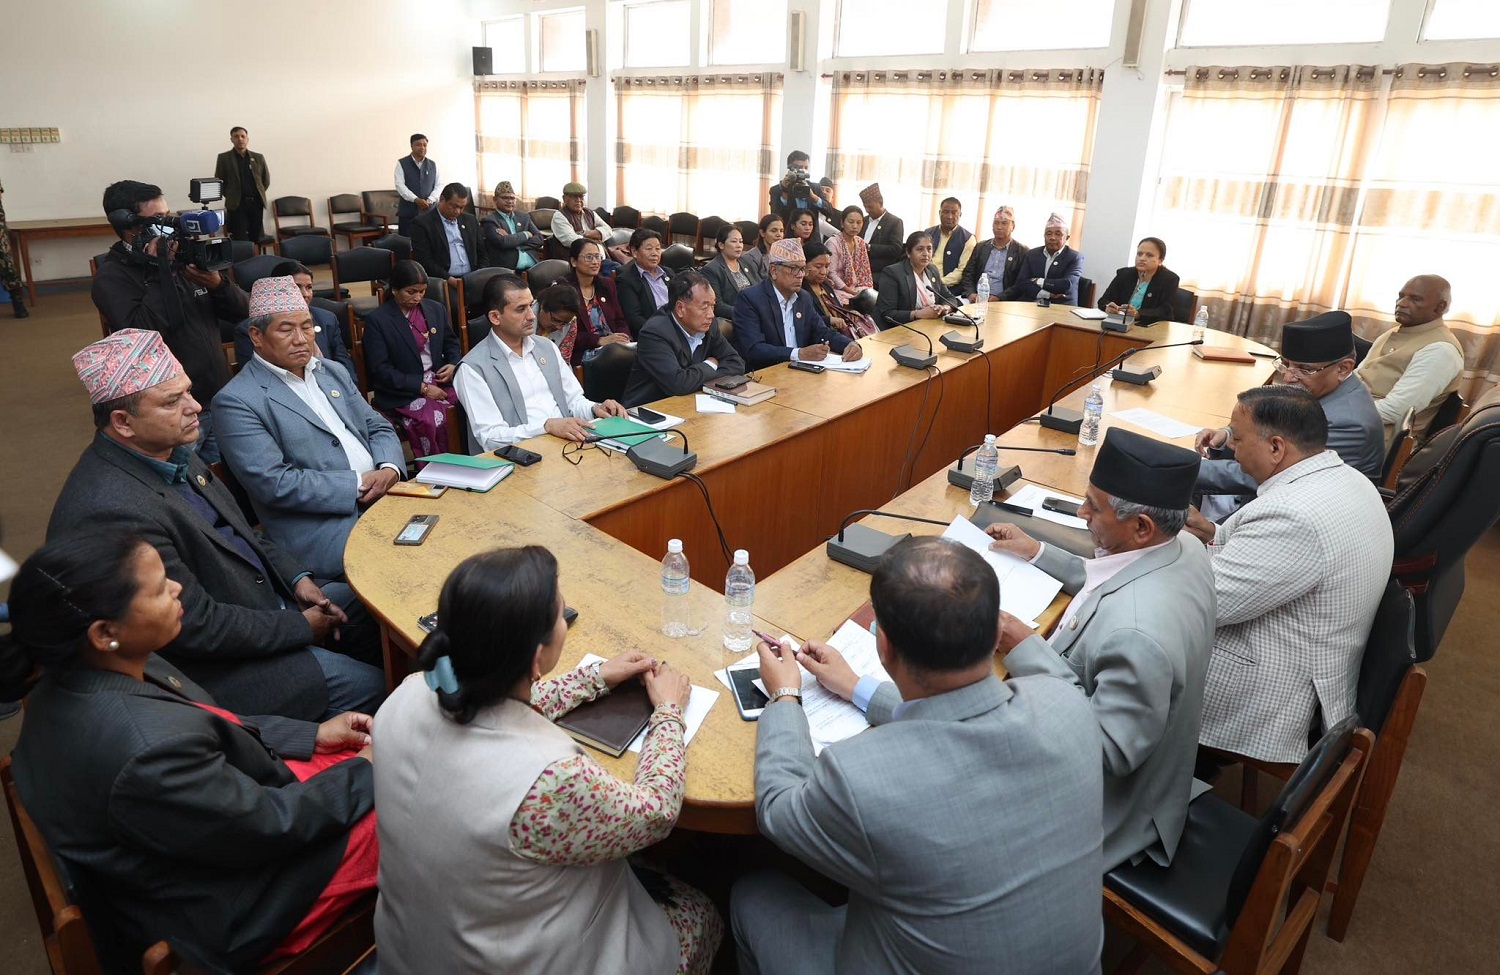 माओवादीको संसदीय दलको विधान संशोधन गर्न पाँच सदस्यीय कार्यदल गठन